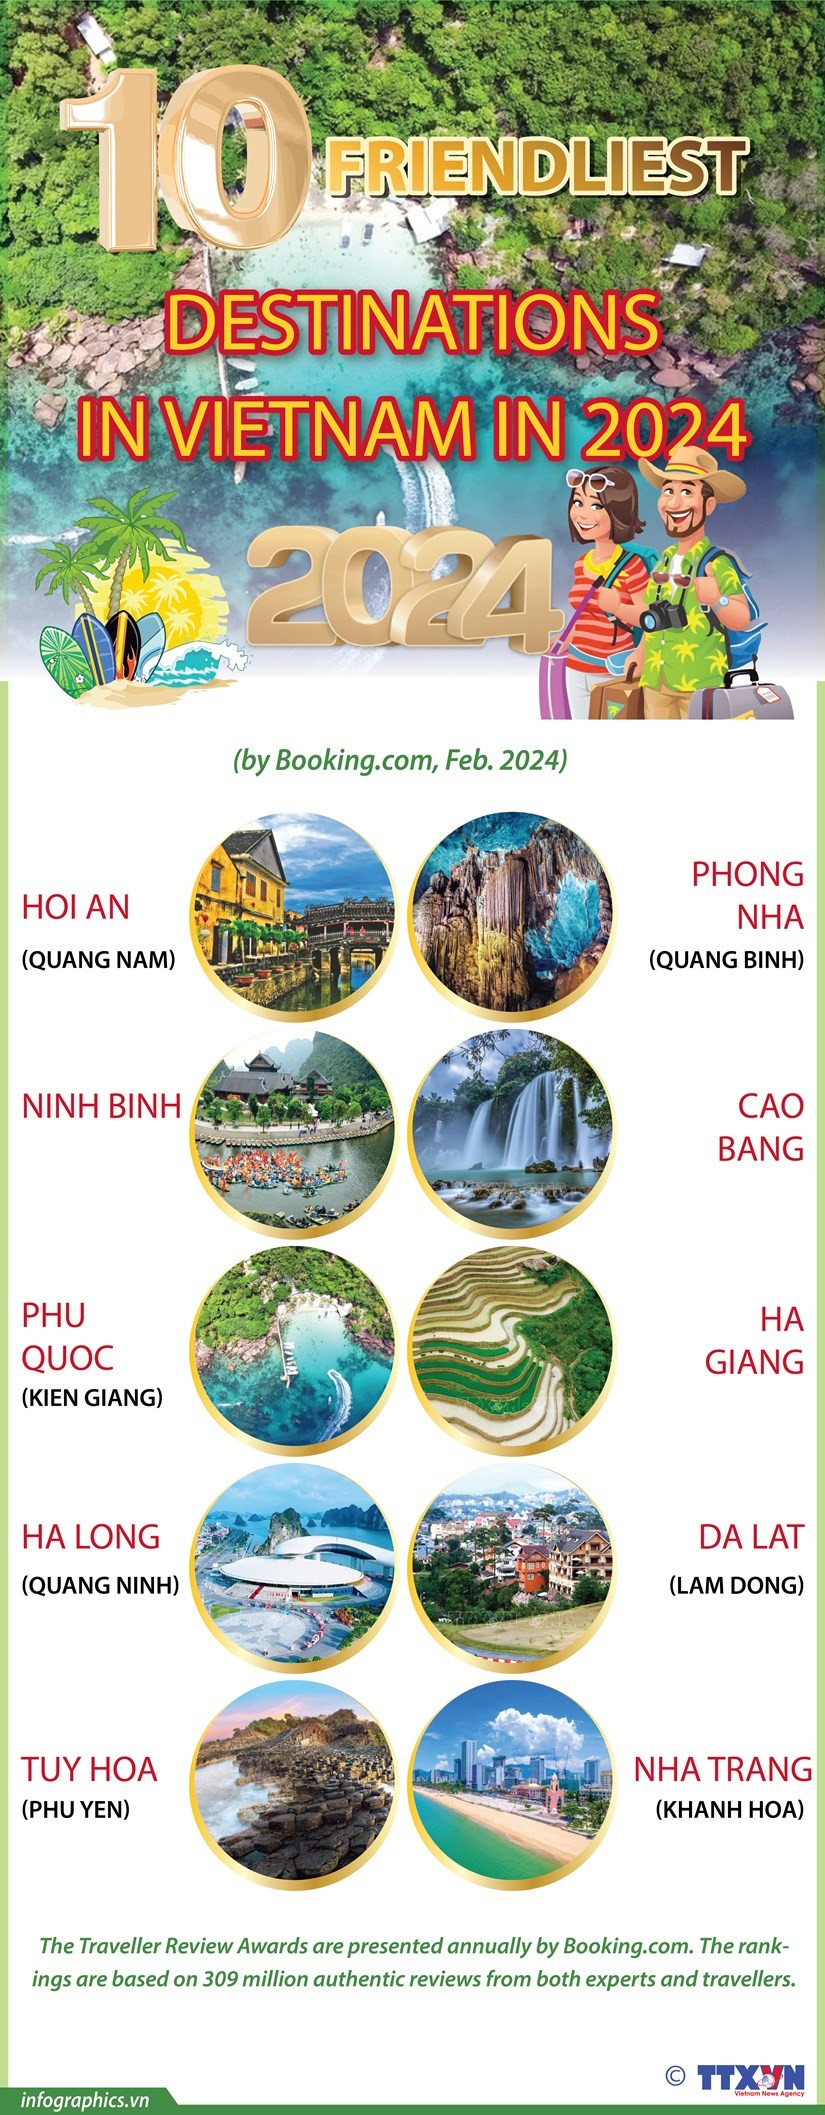 Vietnam’s top 10 friendliest destinations in 2024